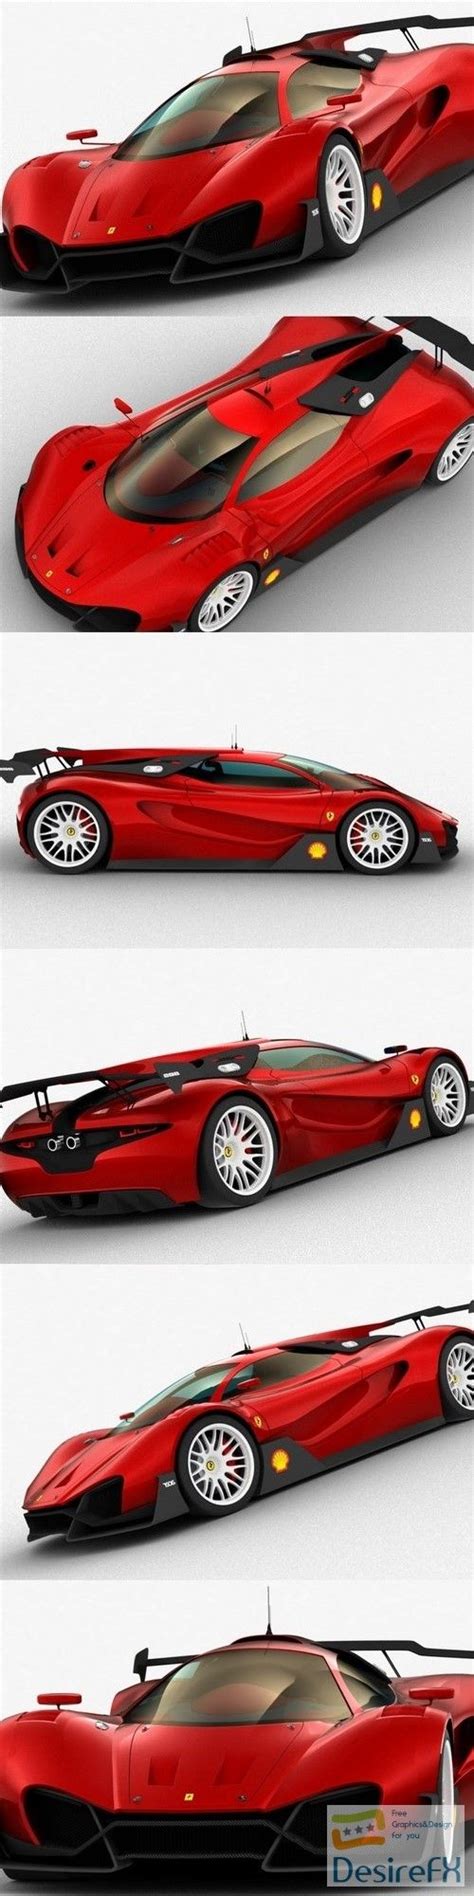 Download Ferrari Xezri Concept 3d Model Desirefxcom 3d Model